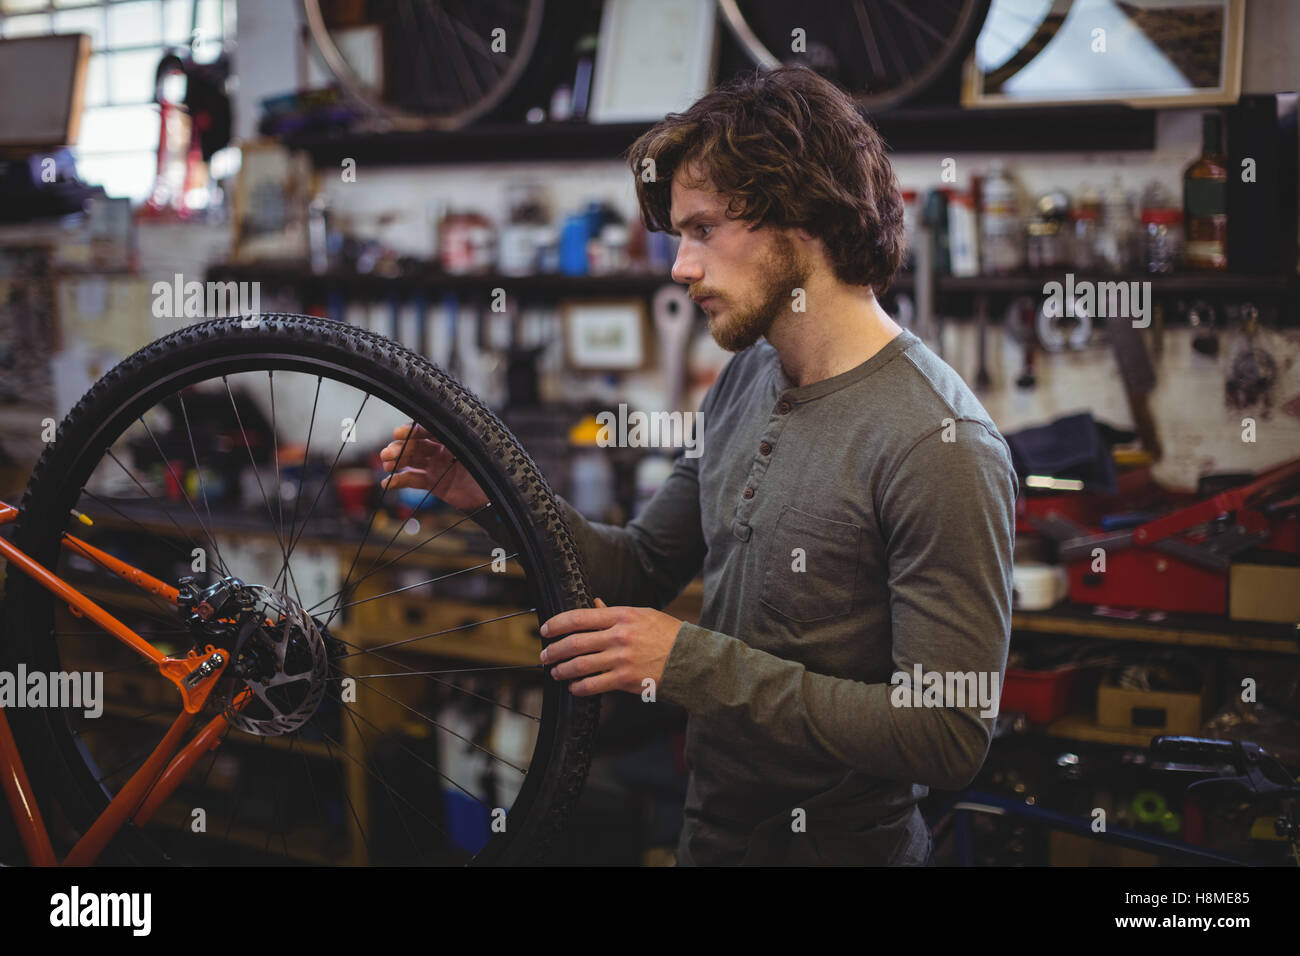 L'examen de mécanicien d'une roue de vélo Banque D'Images